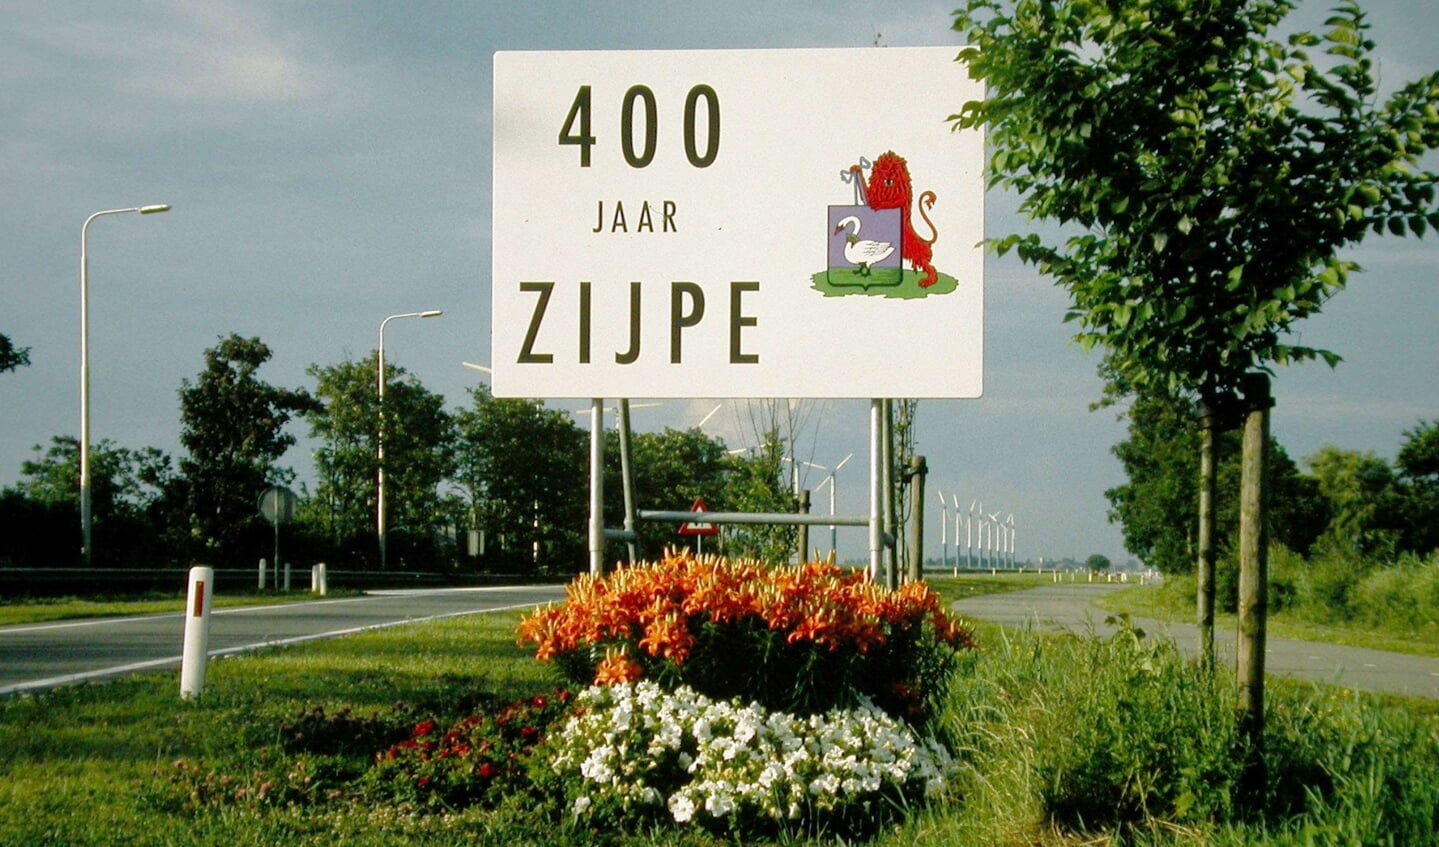 Terugblik 400 jaar Zijpe in Schagerbrug.